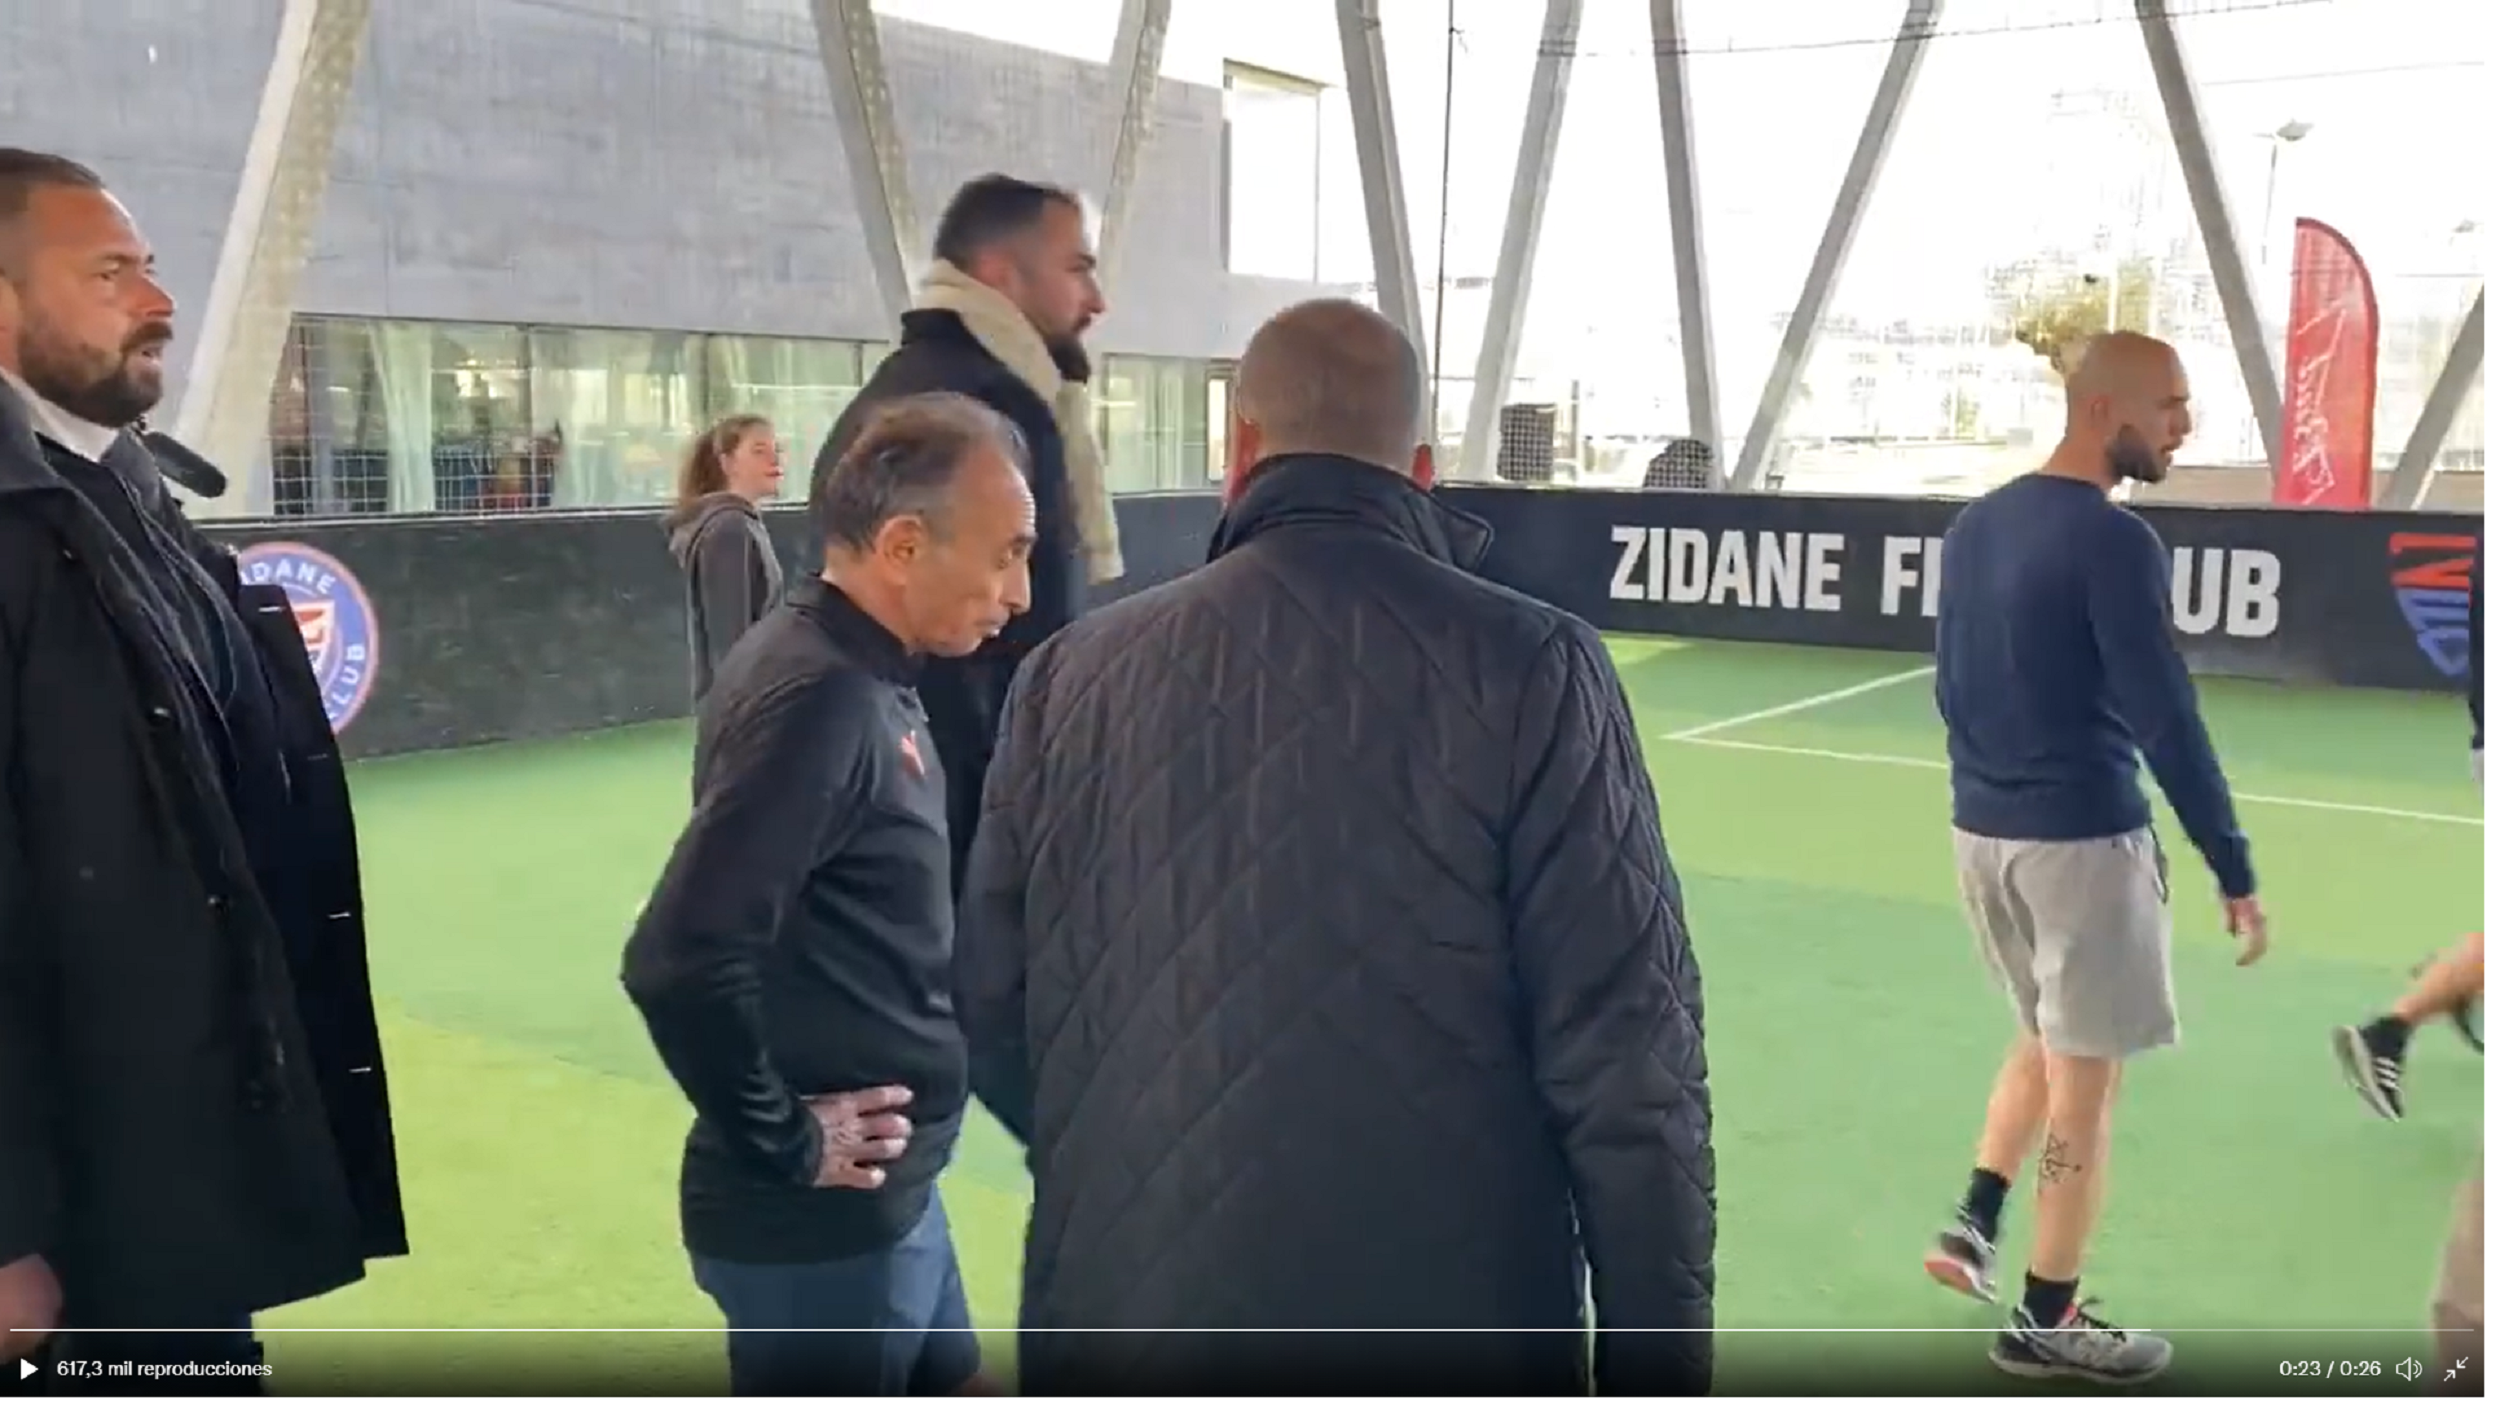 El germà de Zidane expulsa l'ultra Zemmour d'un partit de futbol: "Vagi-se'n!"